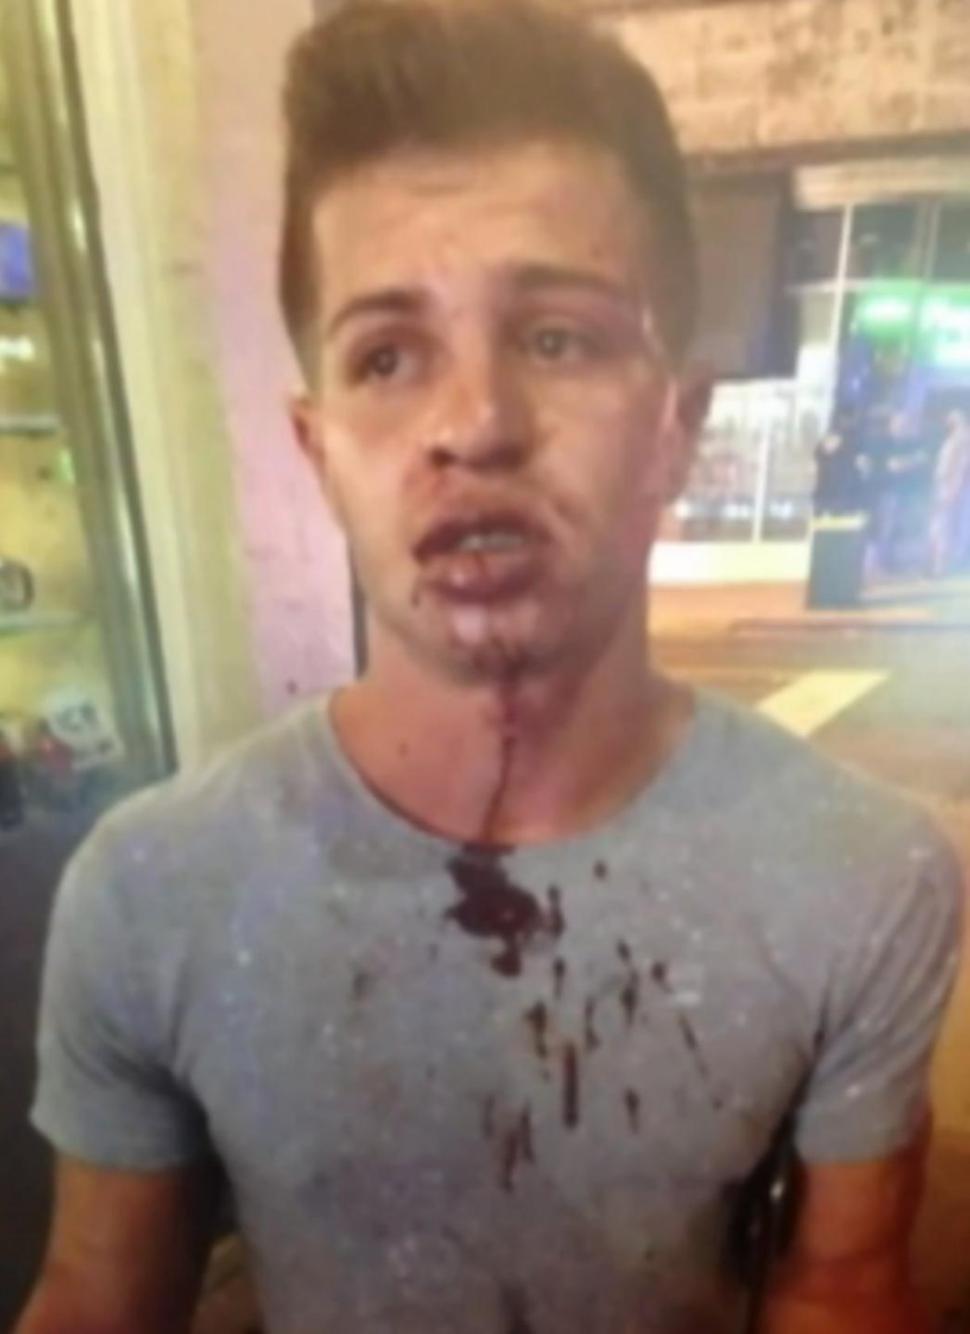 Miami: Ragazzo picchiato perché gay. Video shock dell'aggressione - aggressione omofoba miami 2016 3 - Gay.it